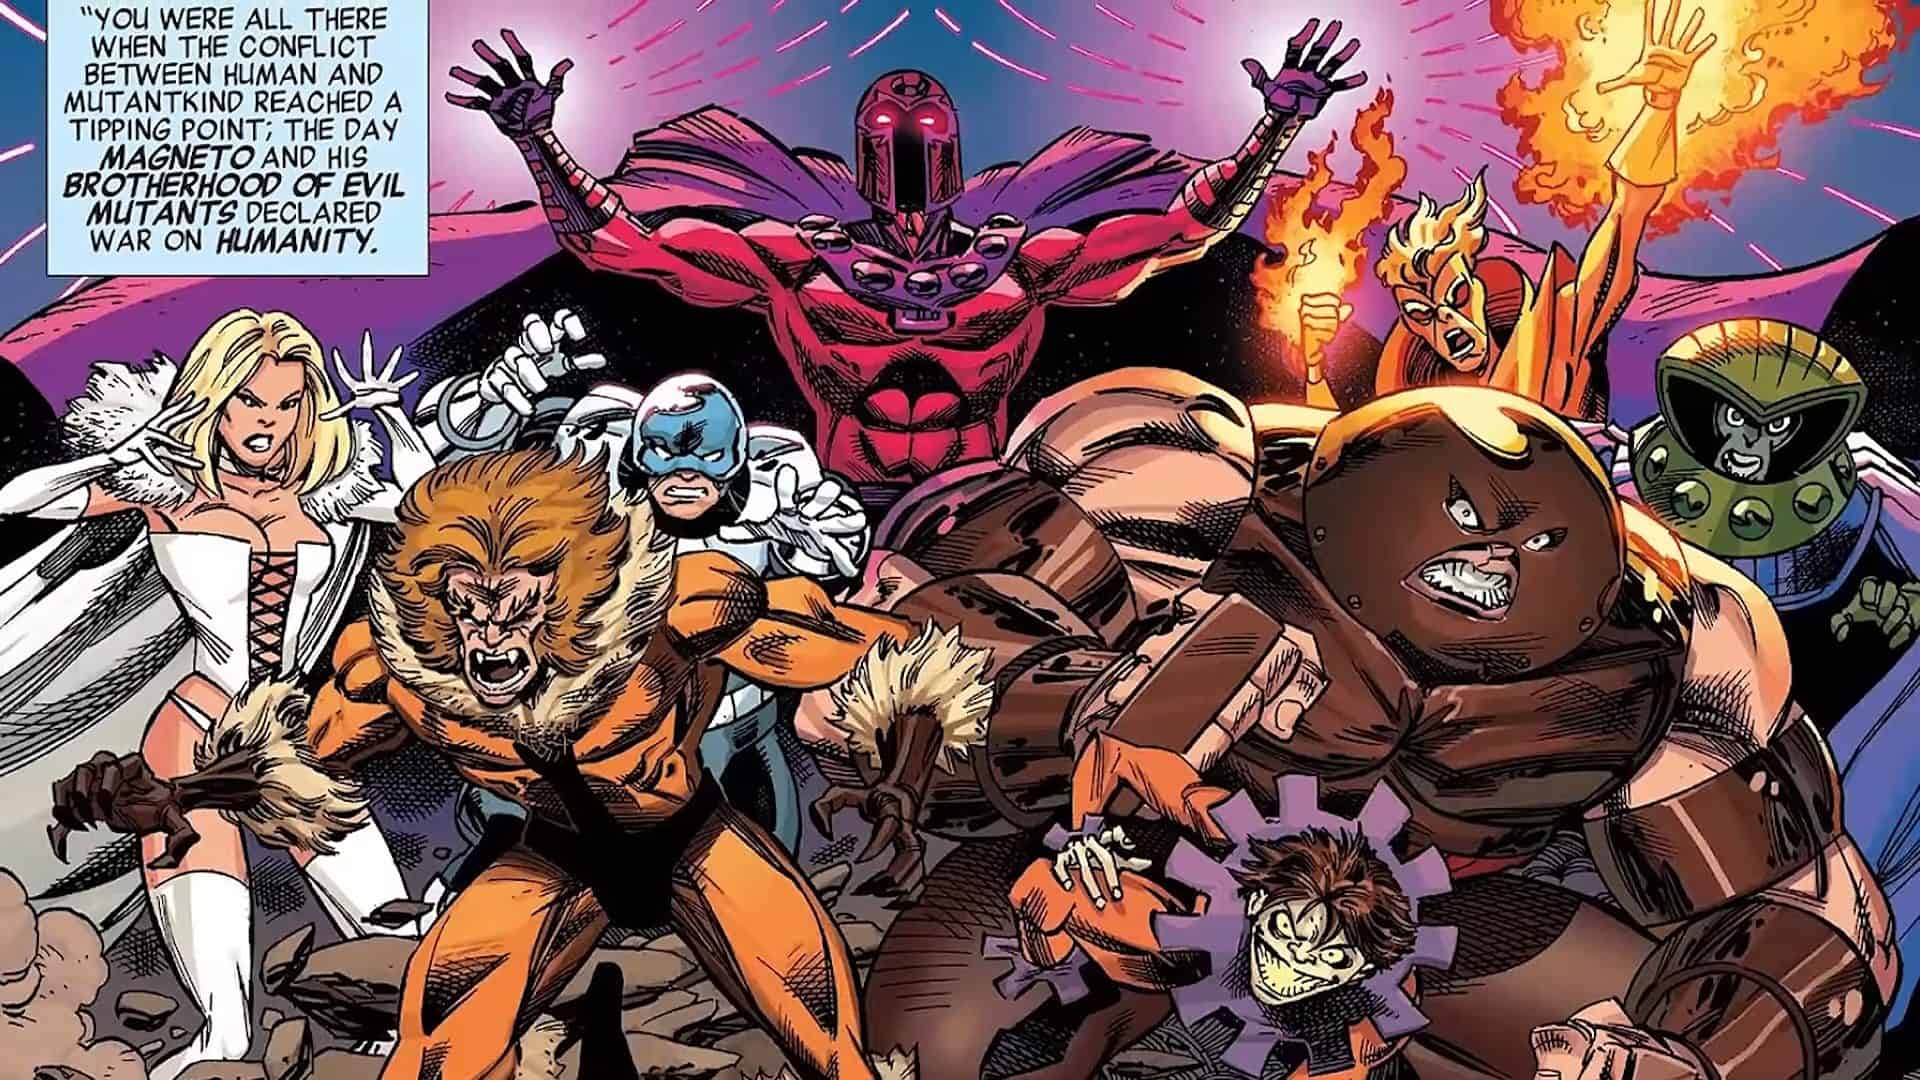 Magnetos evil Mutant team